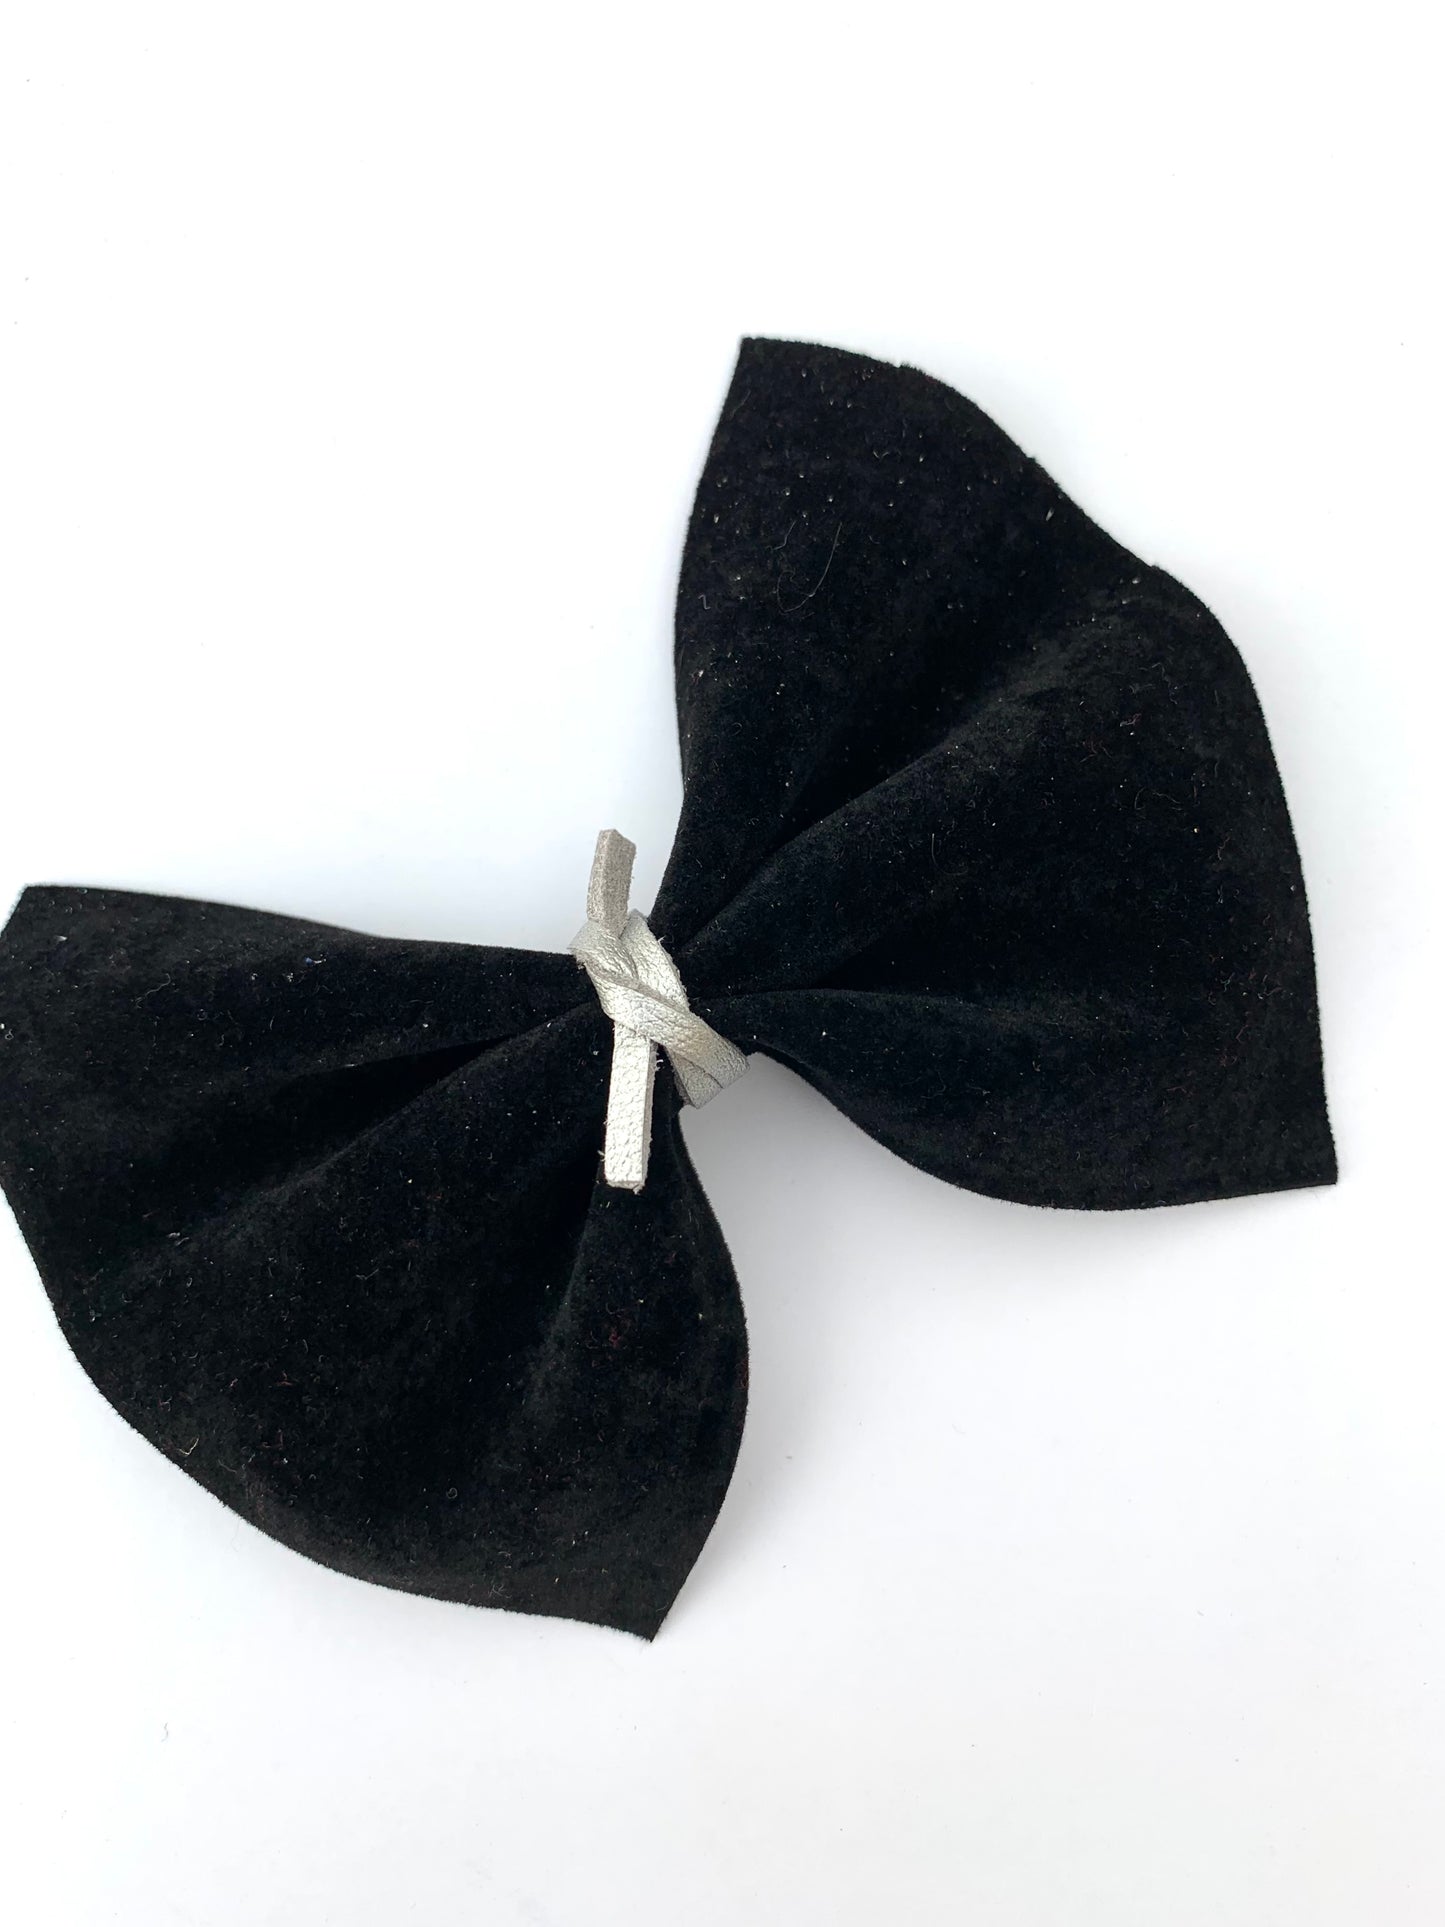 Velvet pinch bow clips